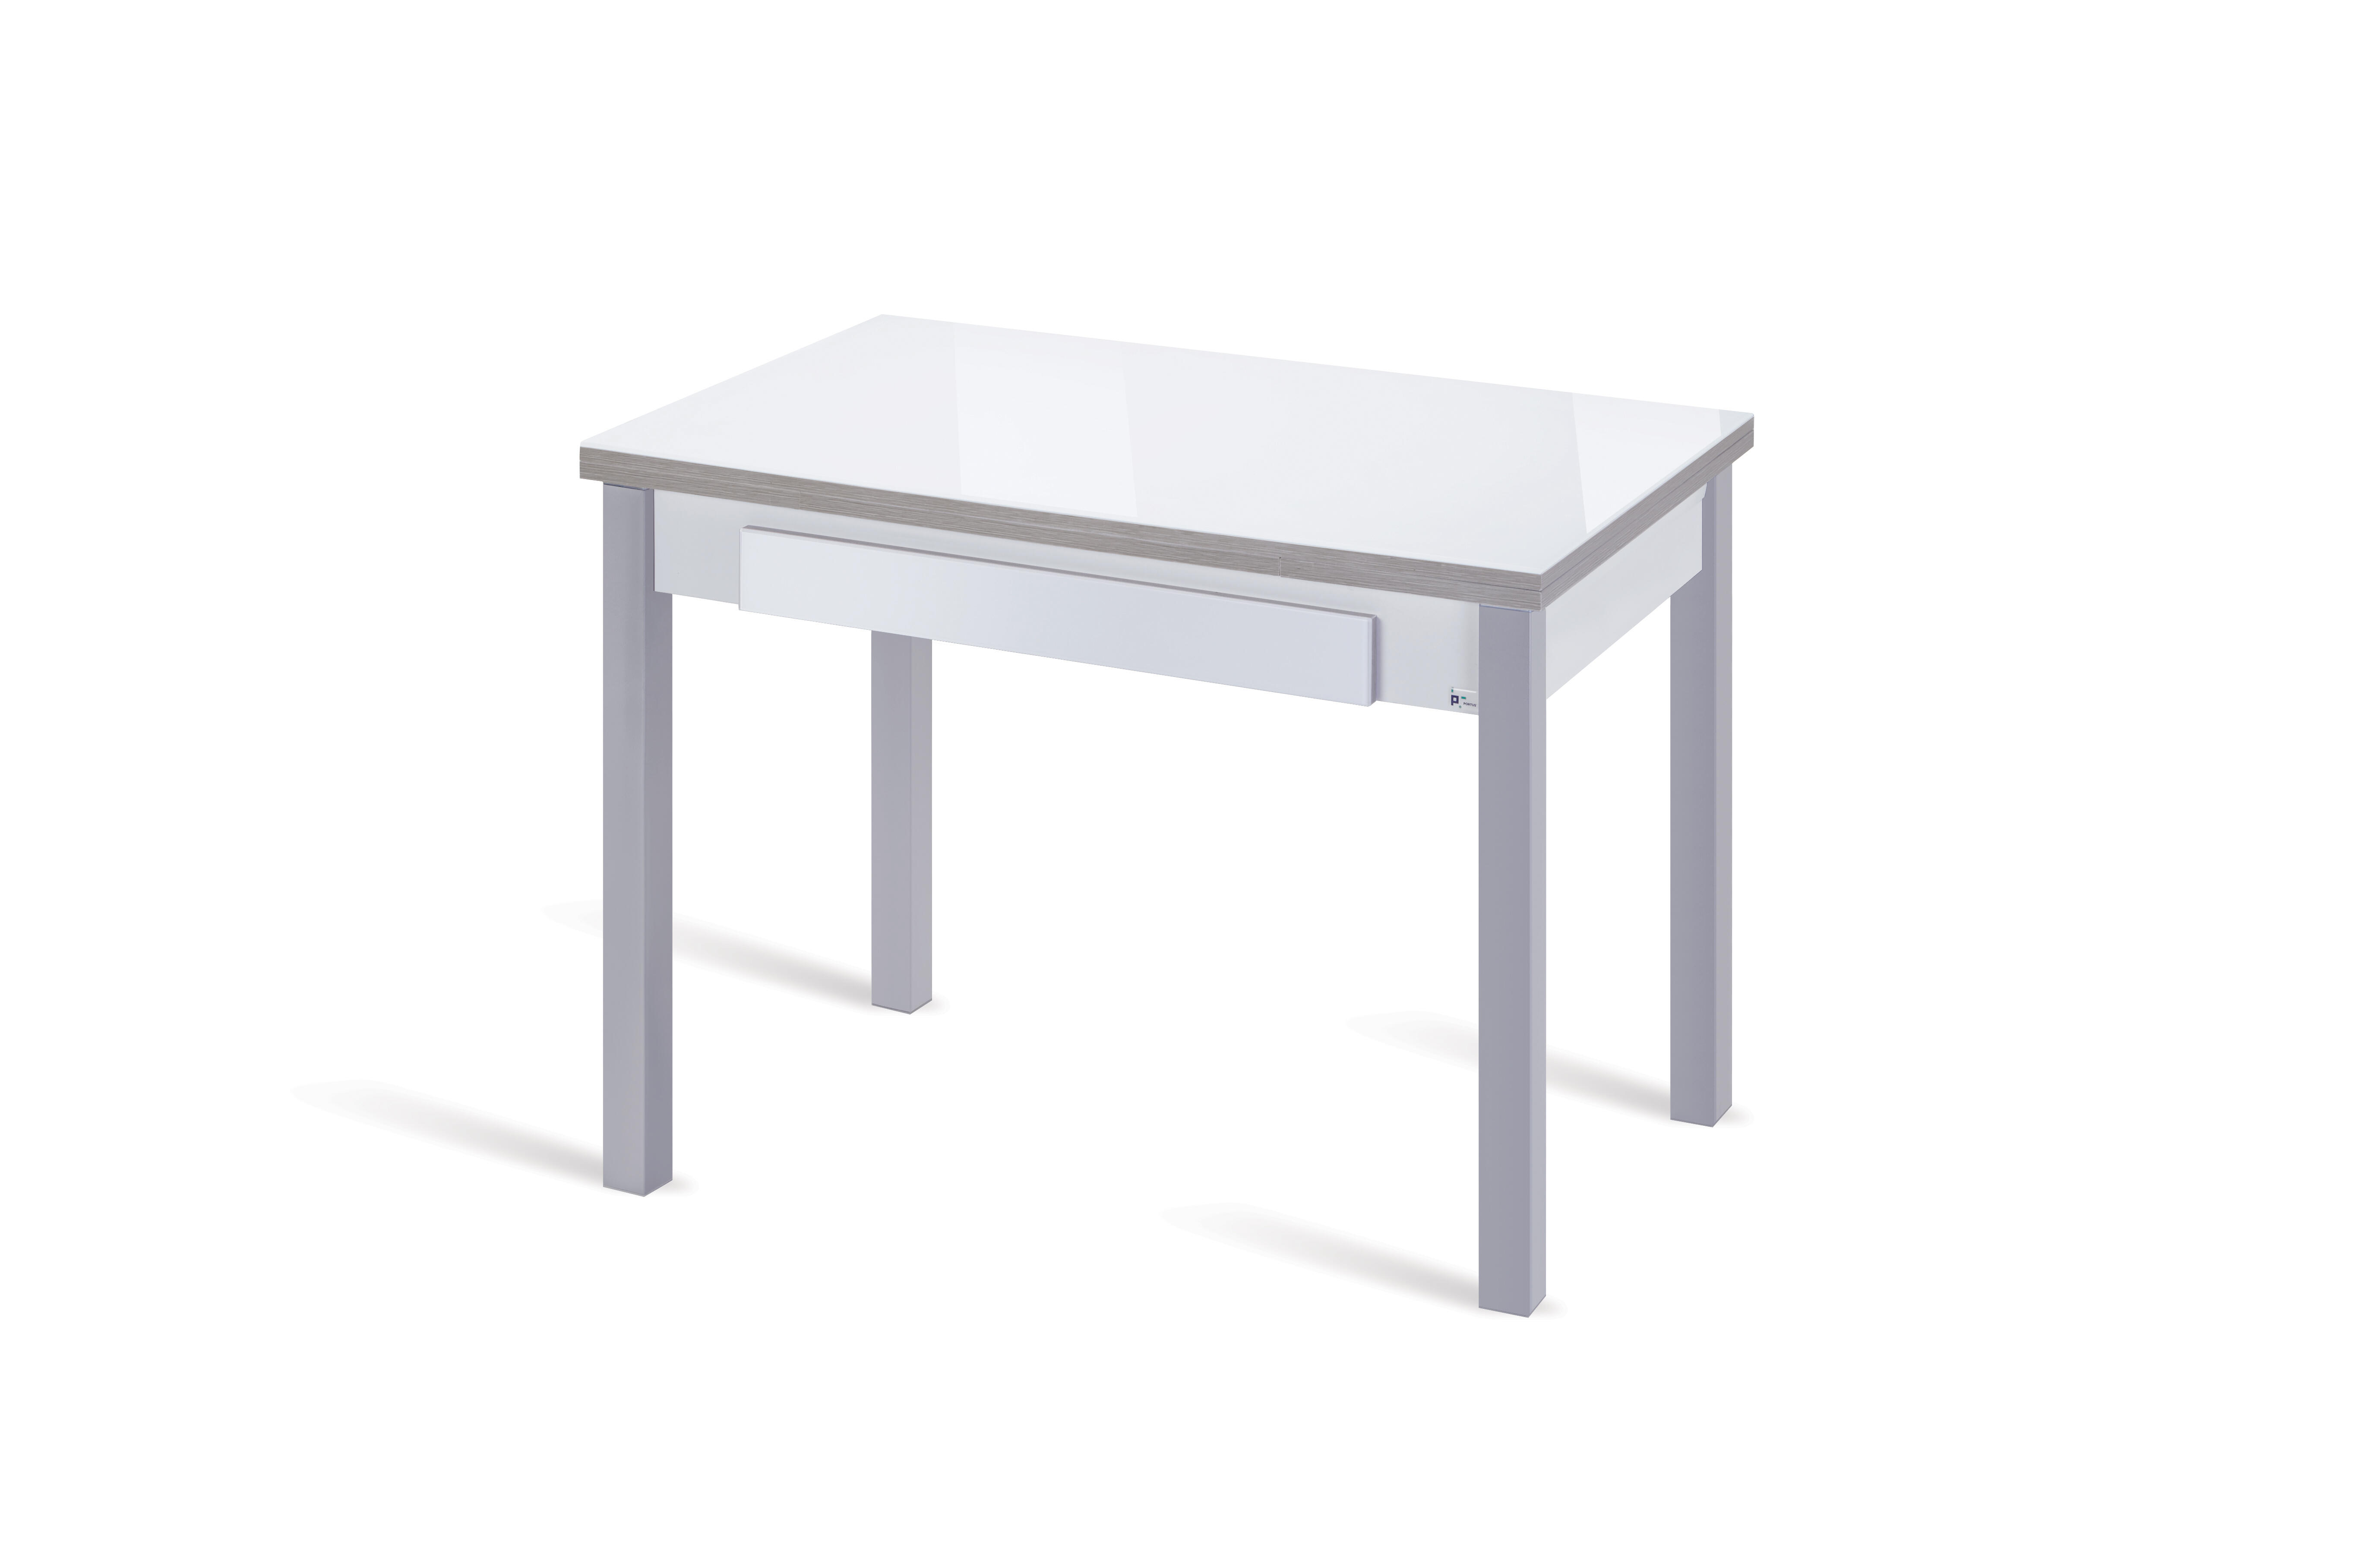 ll➤ Mesa de cocina de cristal fija Medidas Velaco fija 100x60 Velasco  colores Blanco Óptimo